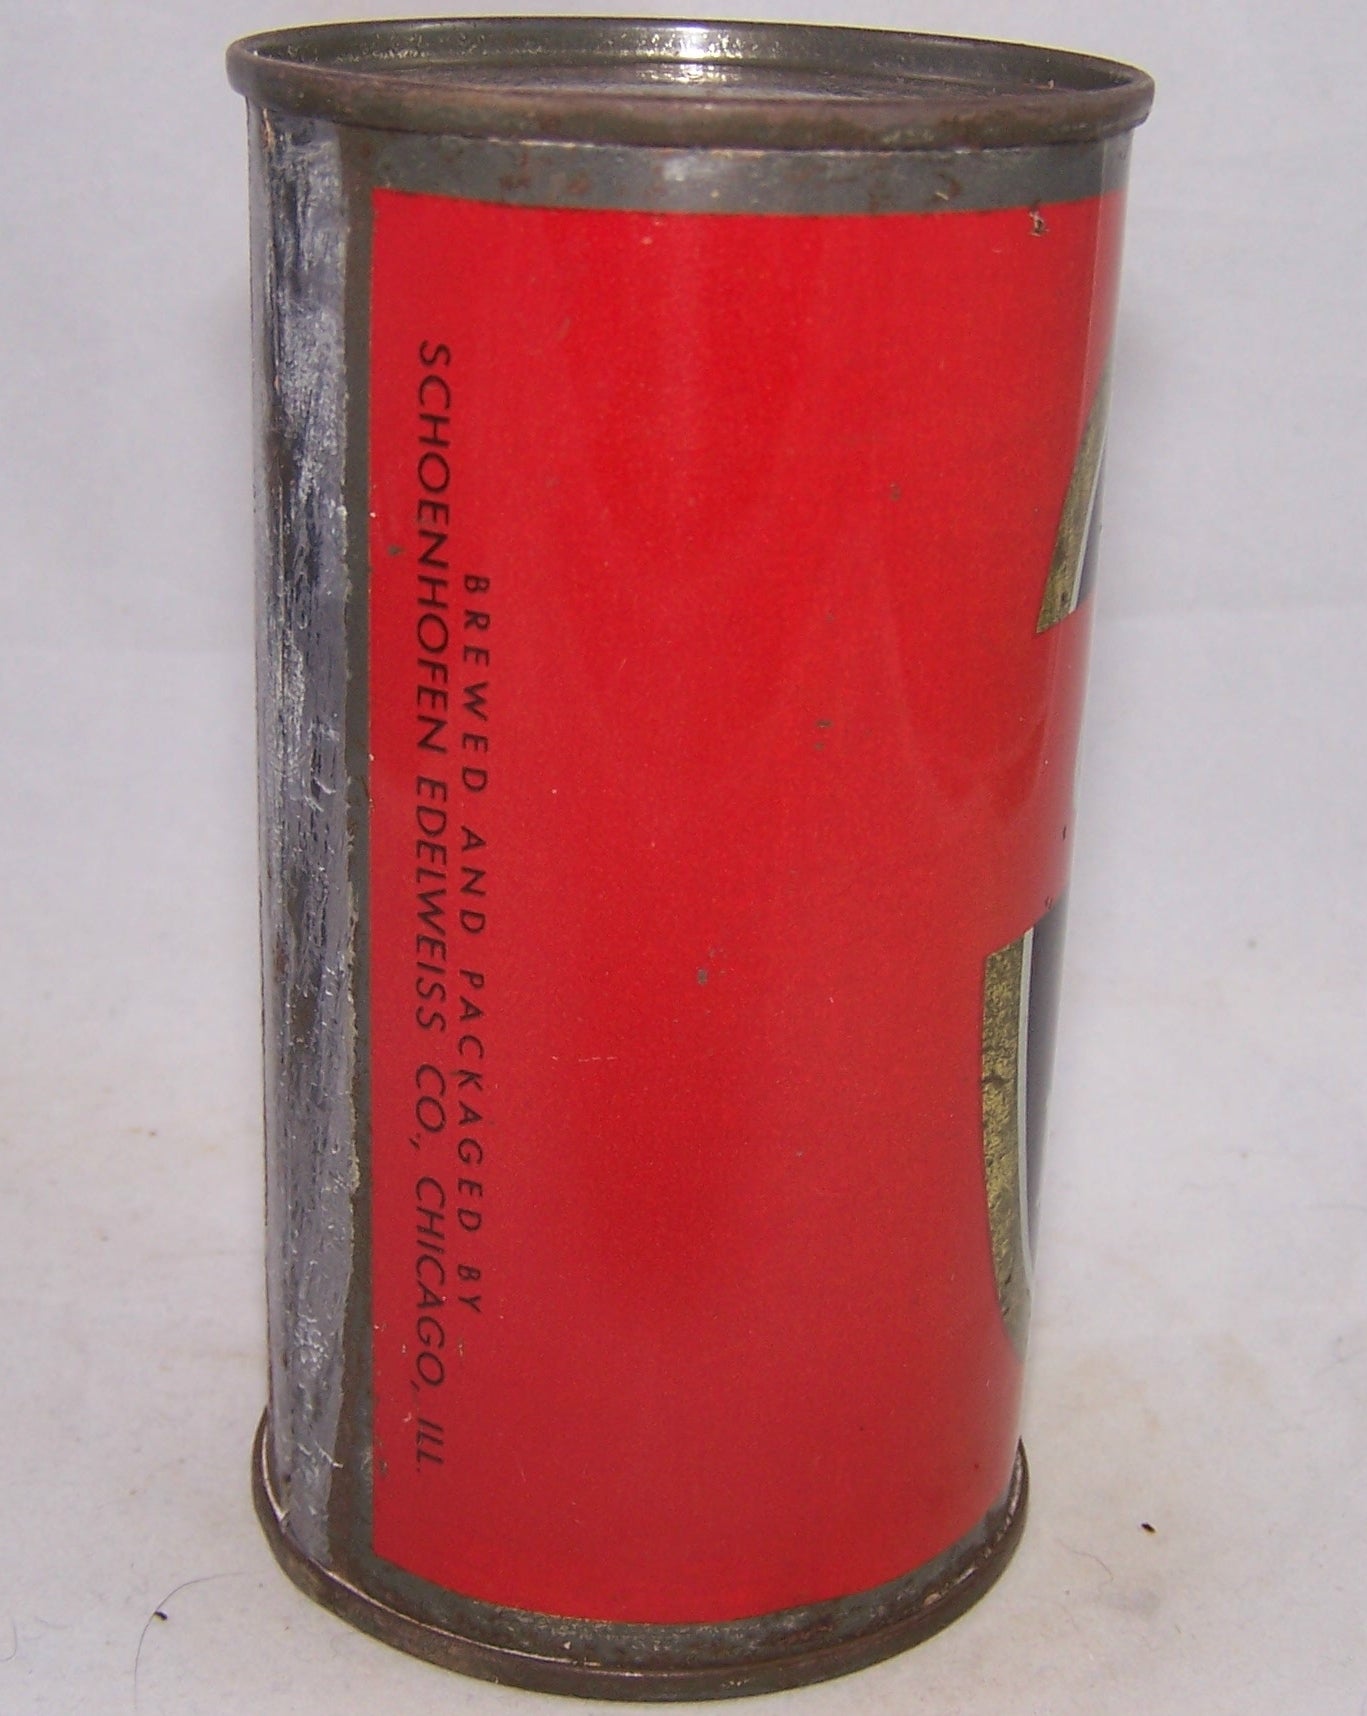 Edelweiss Stout Malt Liquor, USBC 59-10, Grade 1-  Sold on 04/06/18